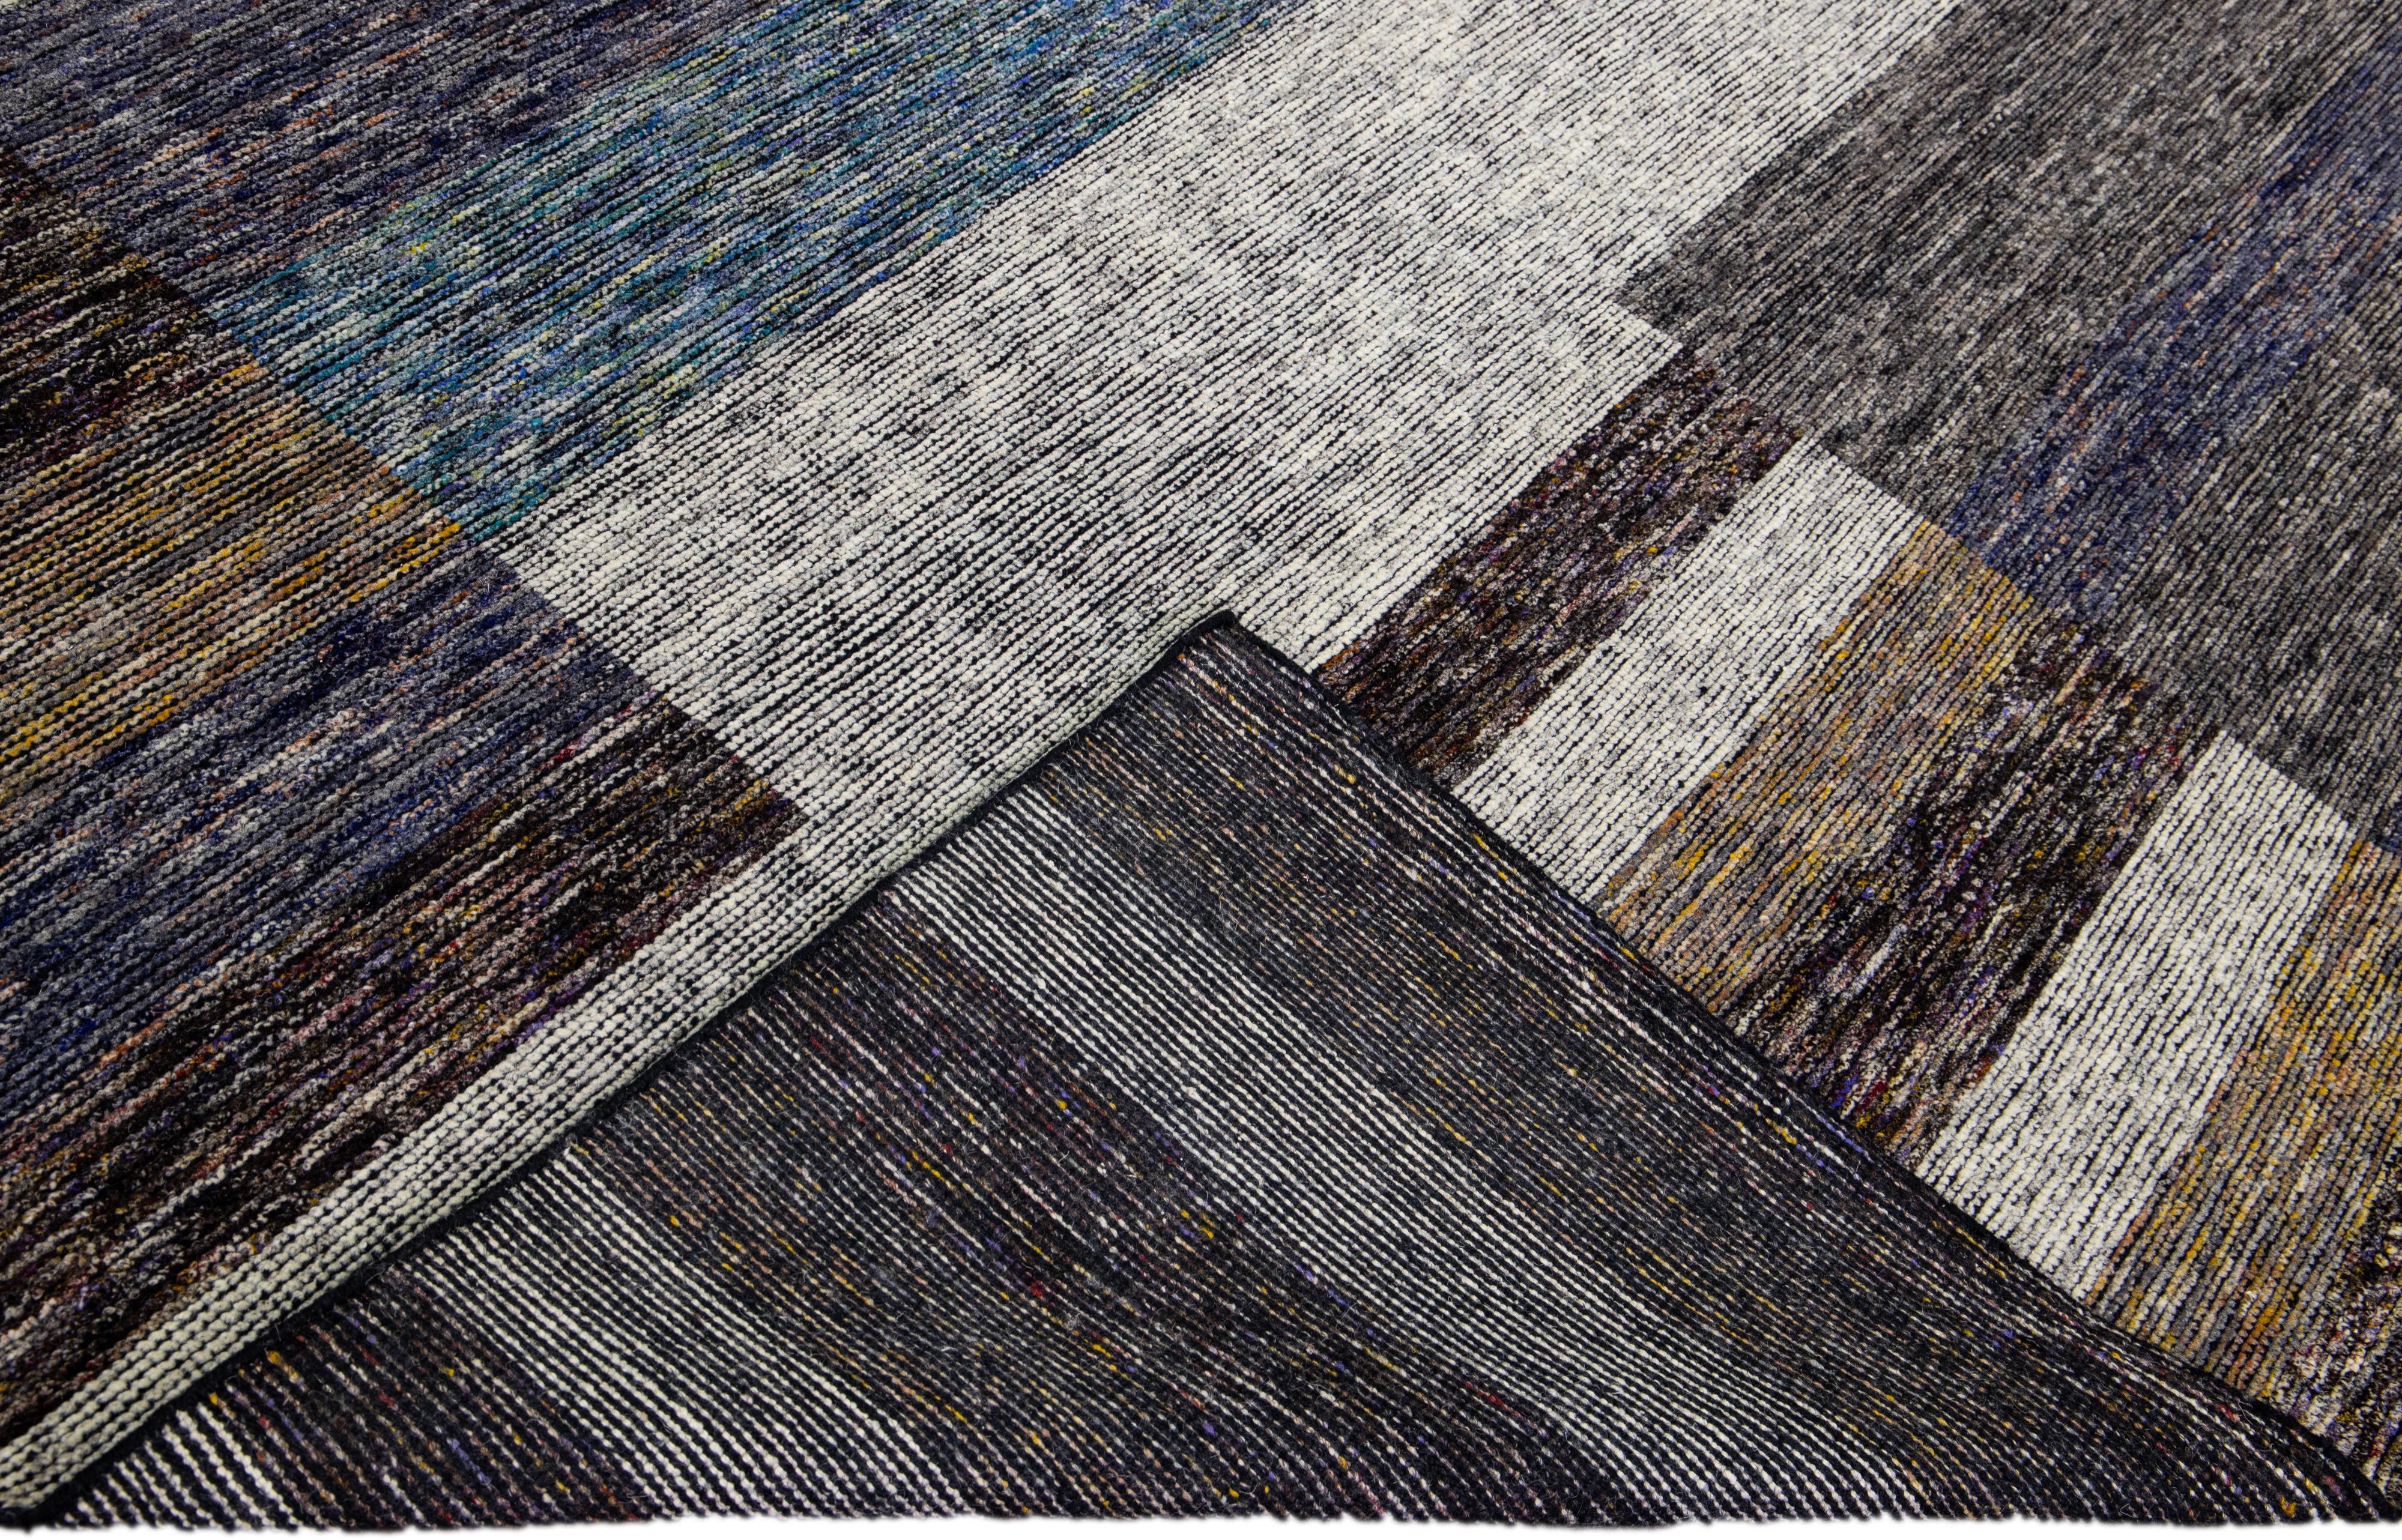 Wunderschöner moderner handgeknüpfter Wollteppich aus der Safi-Kollektion von Apadana mit einem erdigen Farbfeld. Dieser moderne Teppich hat blaue, graue und braune Akzente ein wunderschönes Layout abstraktes Design.

Dieser Teppich misst: 10' x